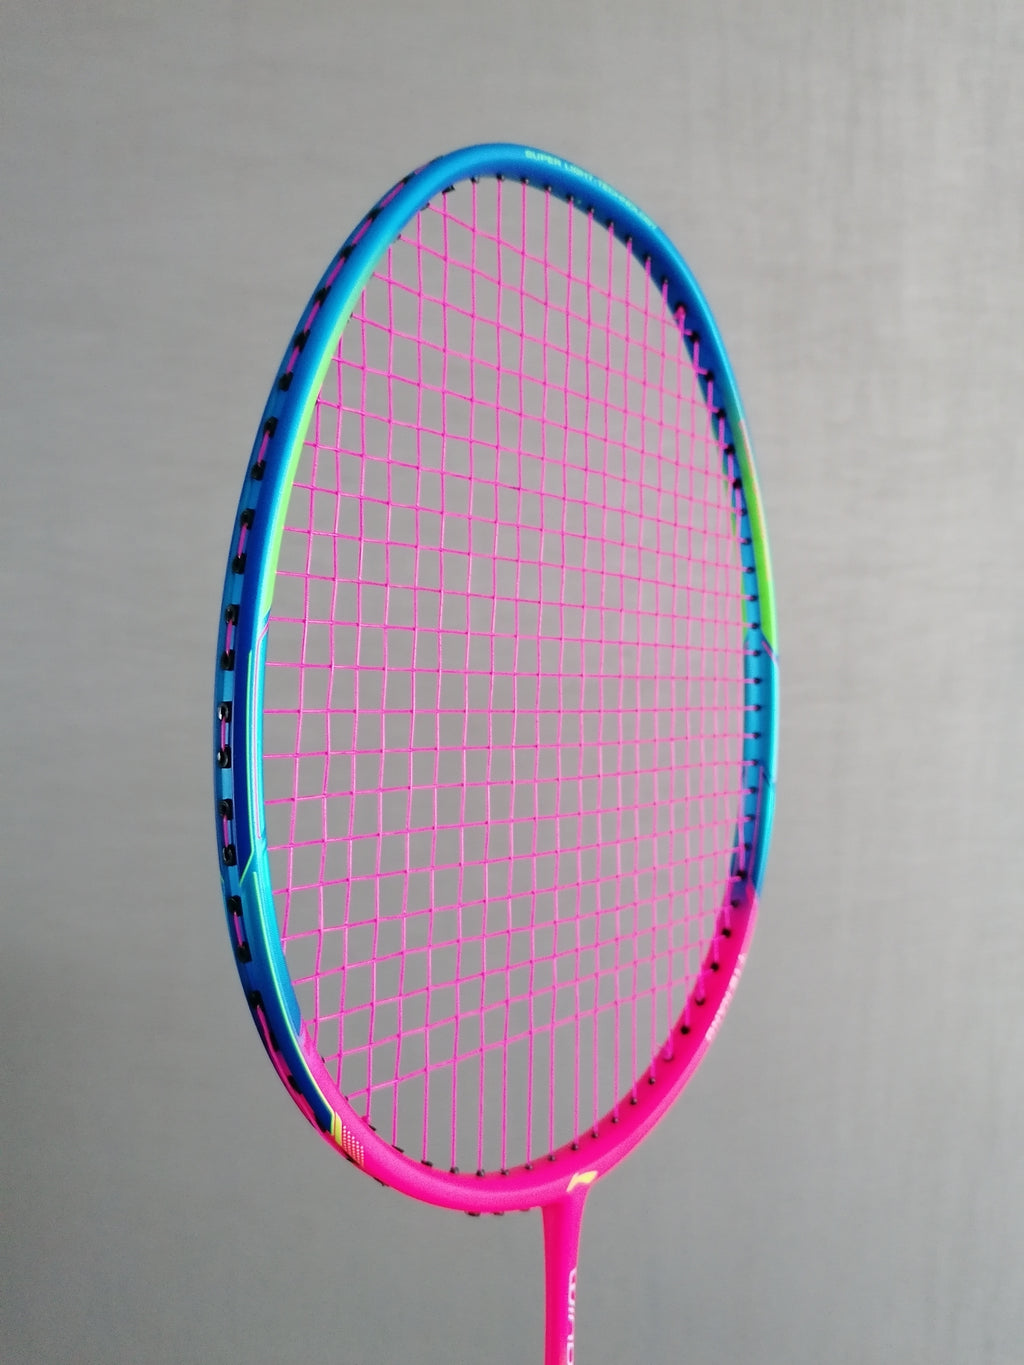 Li-Ning Windstorm 72s badminton racket 2021! - badminton racket review